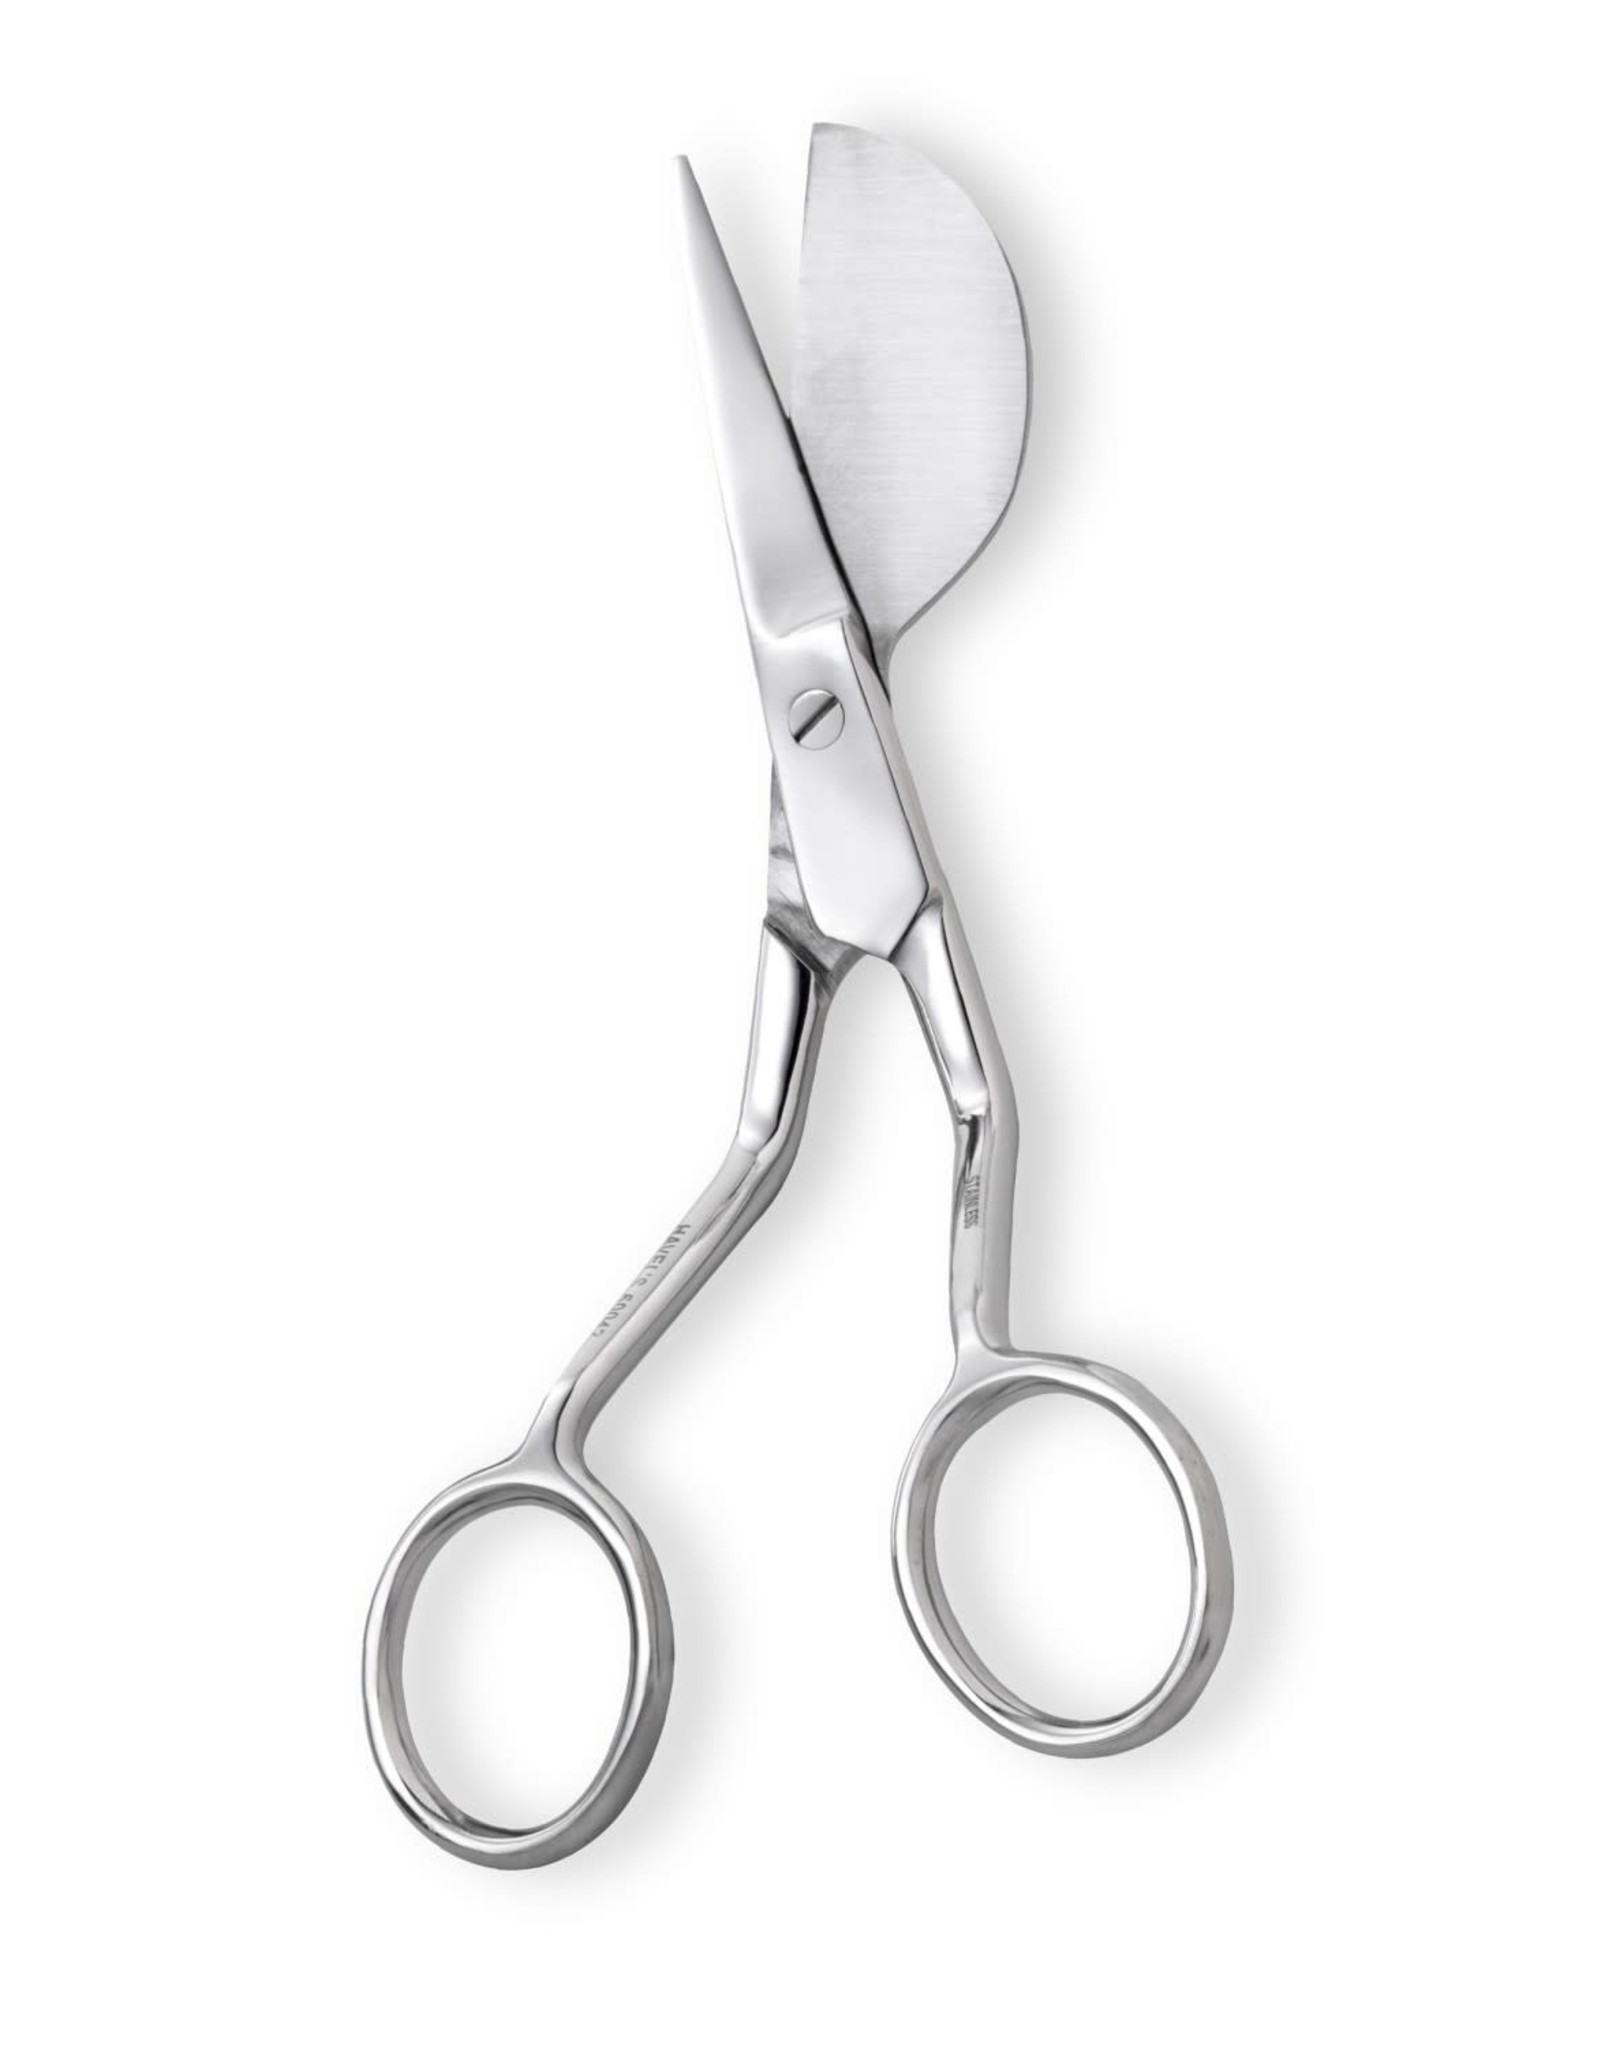 Duckbill Appliqué scissors 5,5 inch - right handed